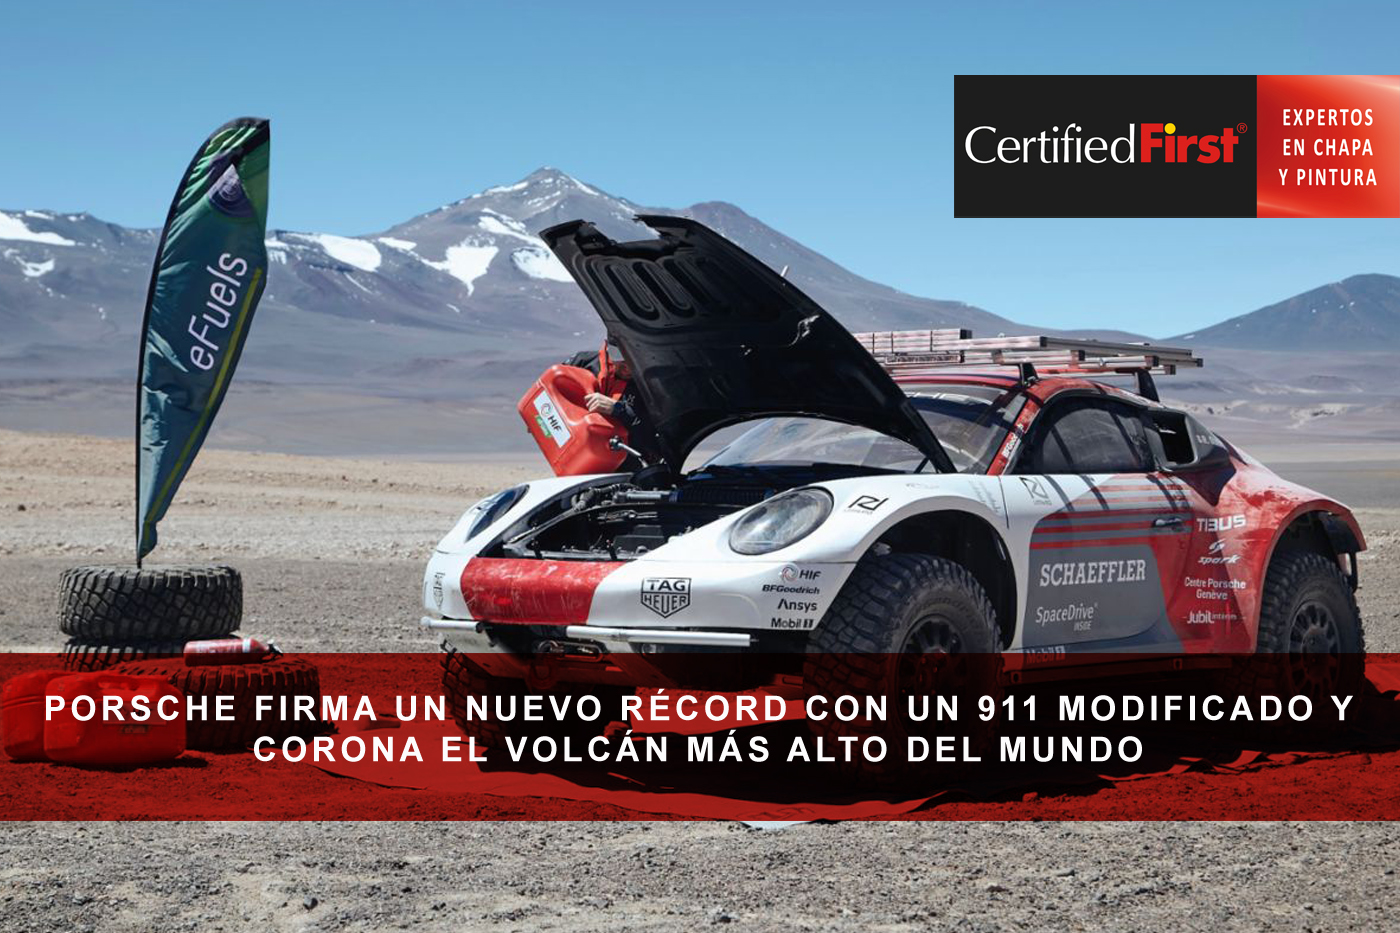 Porsche firma un nuevo récord con un 911 modificado y corona el volcán más alto del mundo